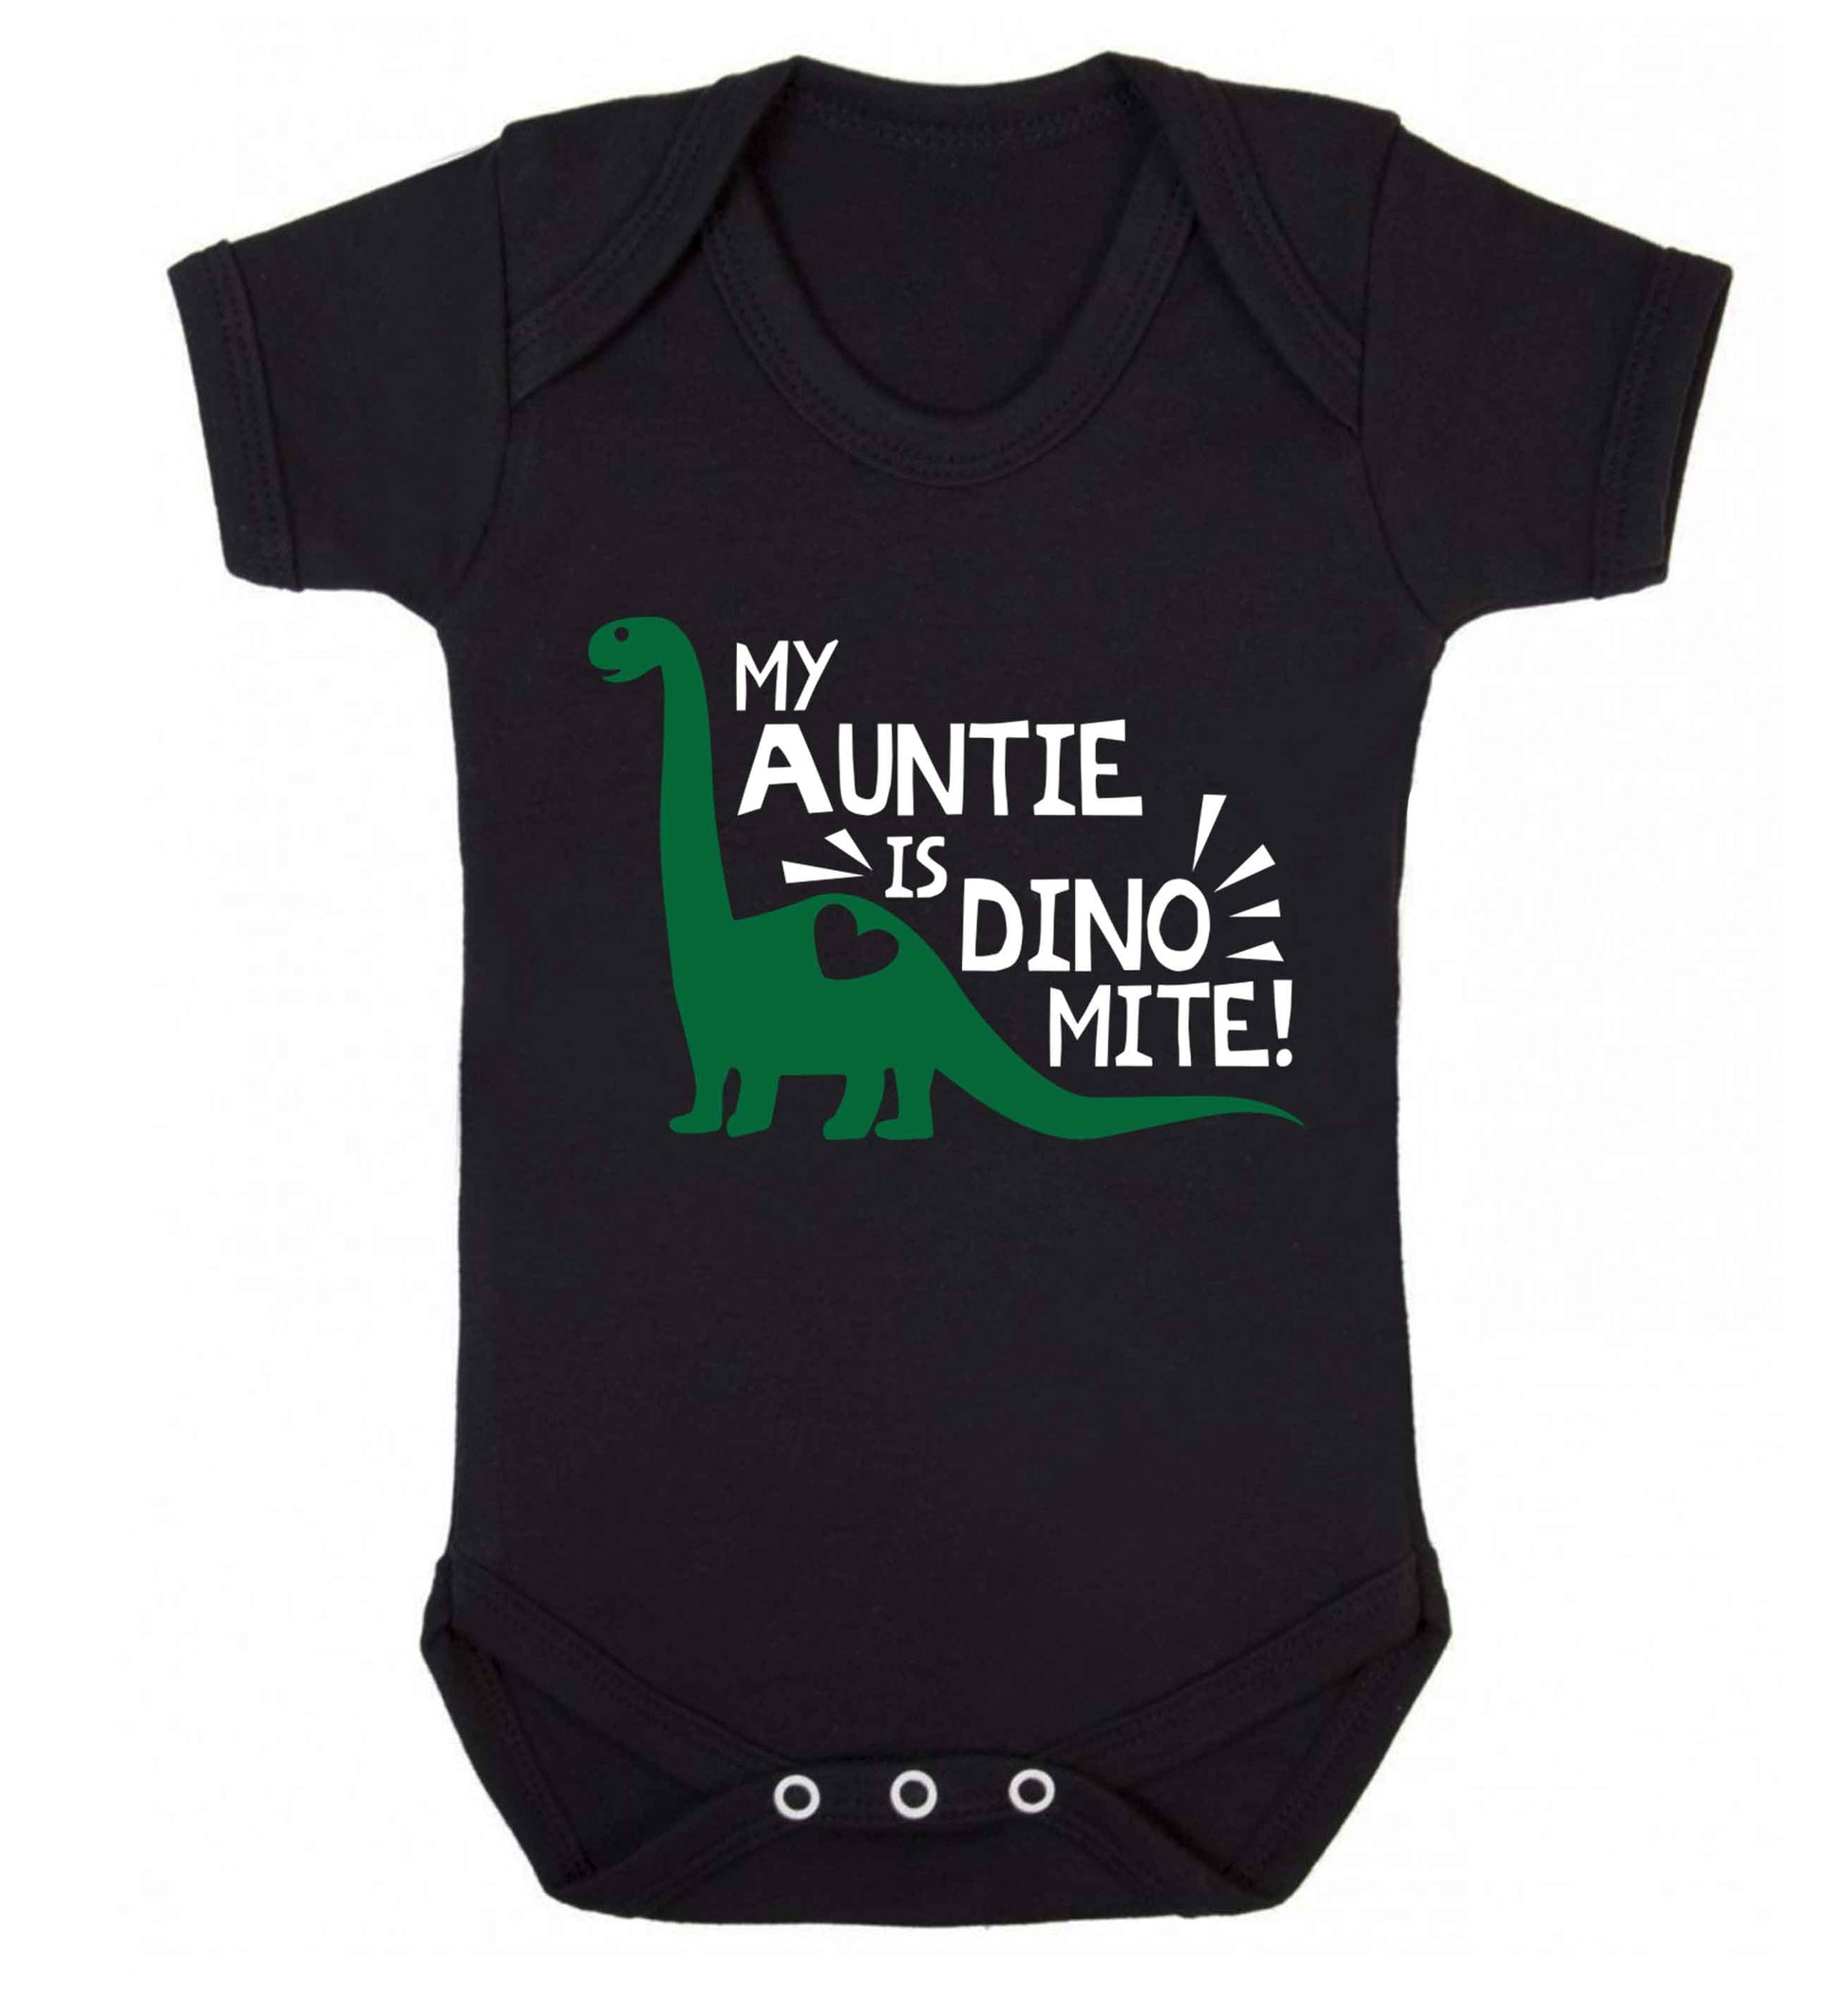 My auntie is dinomite! Baby Vest black 18-24 months